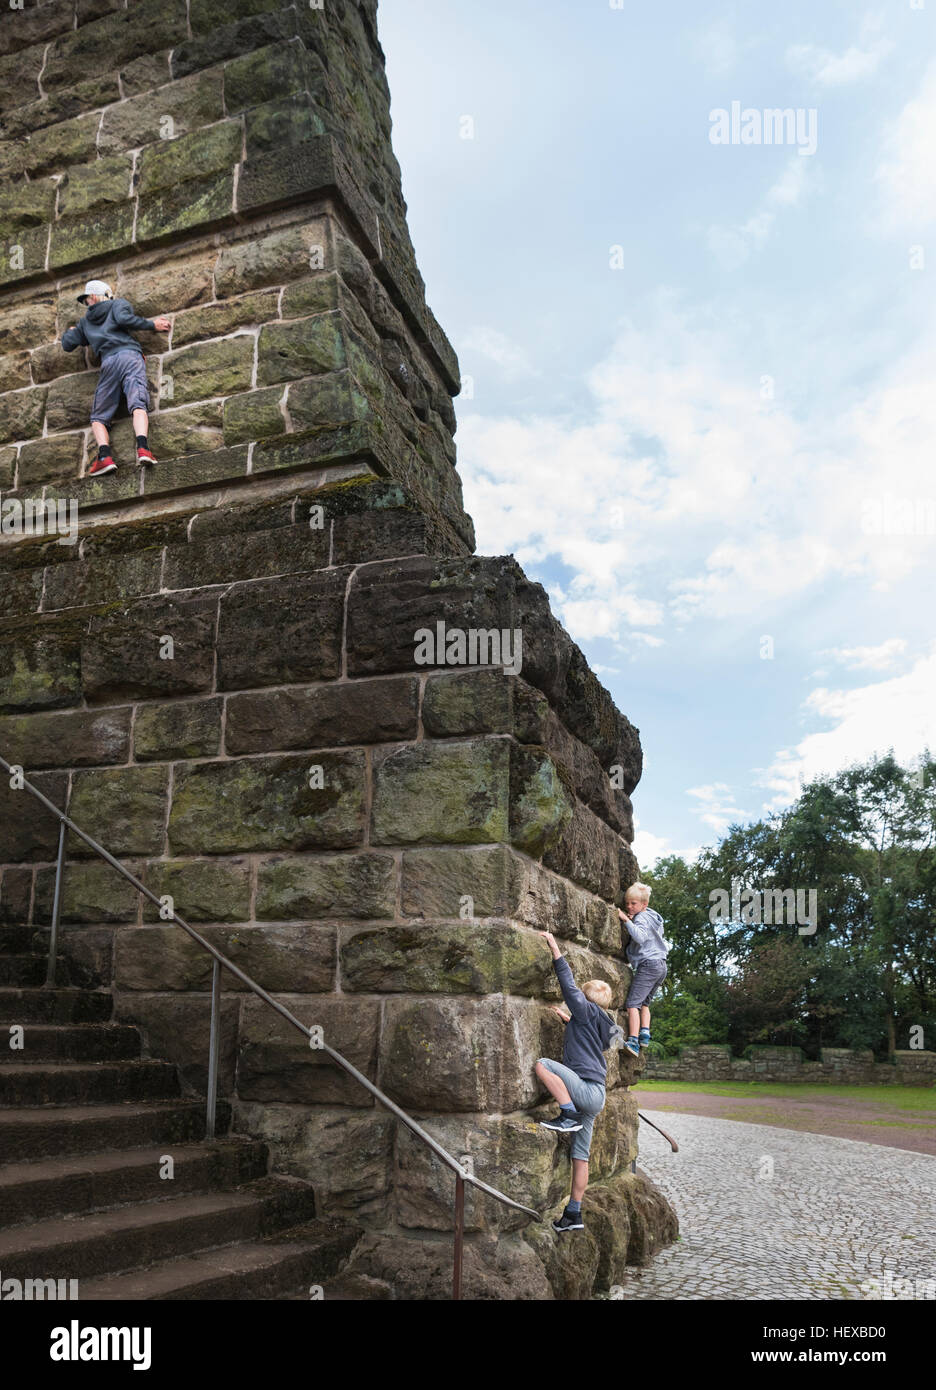 Boys climbing stone wall Stock Photo